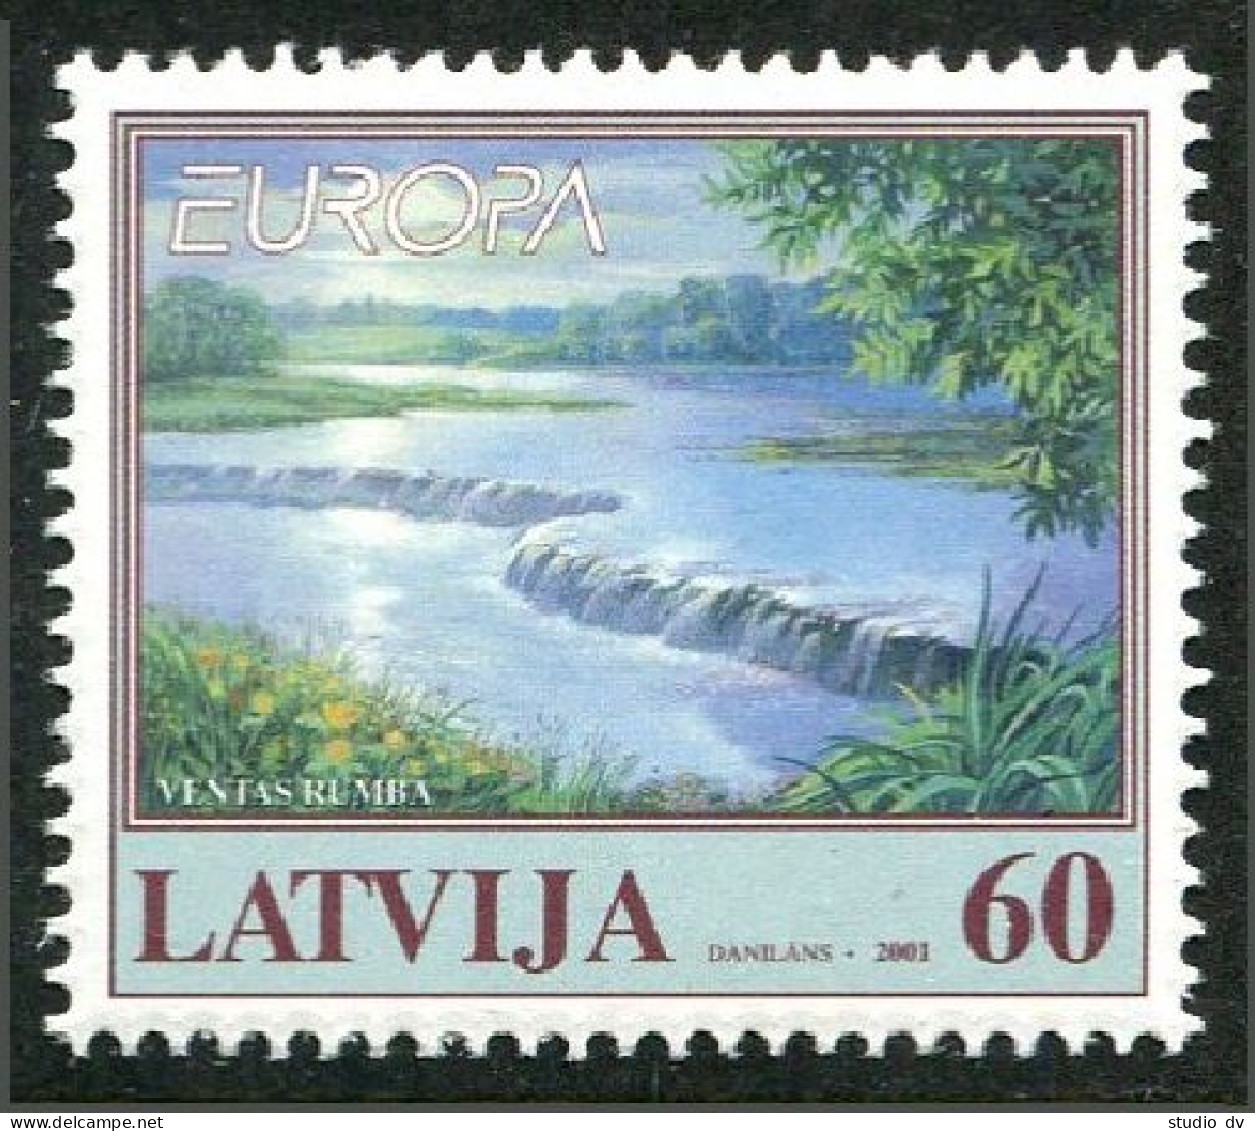 Latvia 528, MNH. Michel 544. EUROPA CEPT-2001. Lake. - Letland